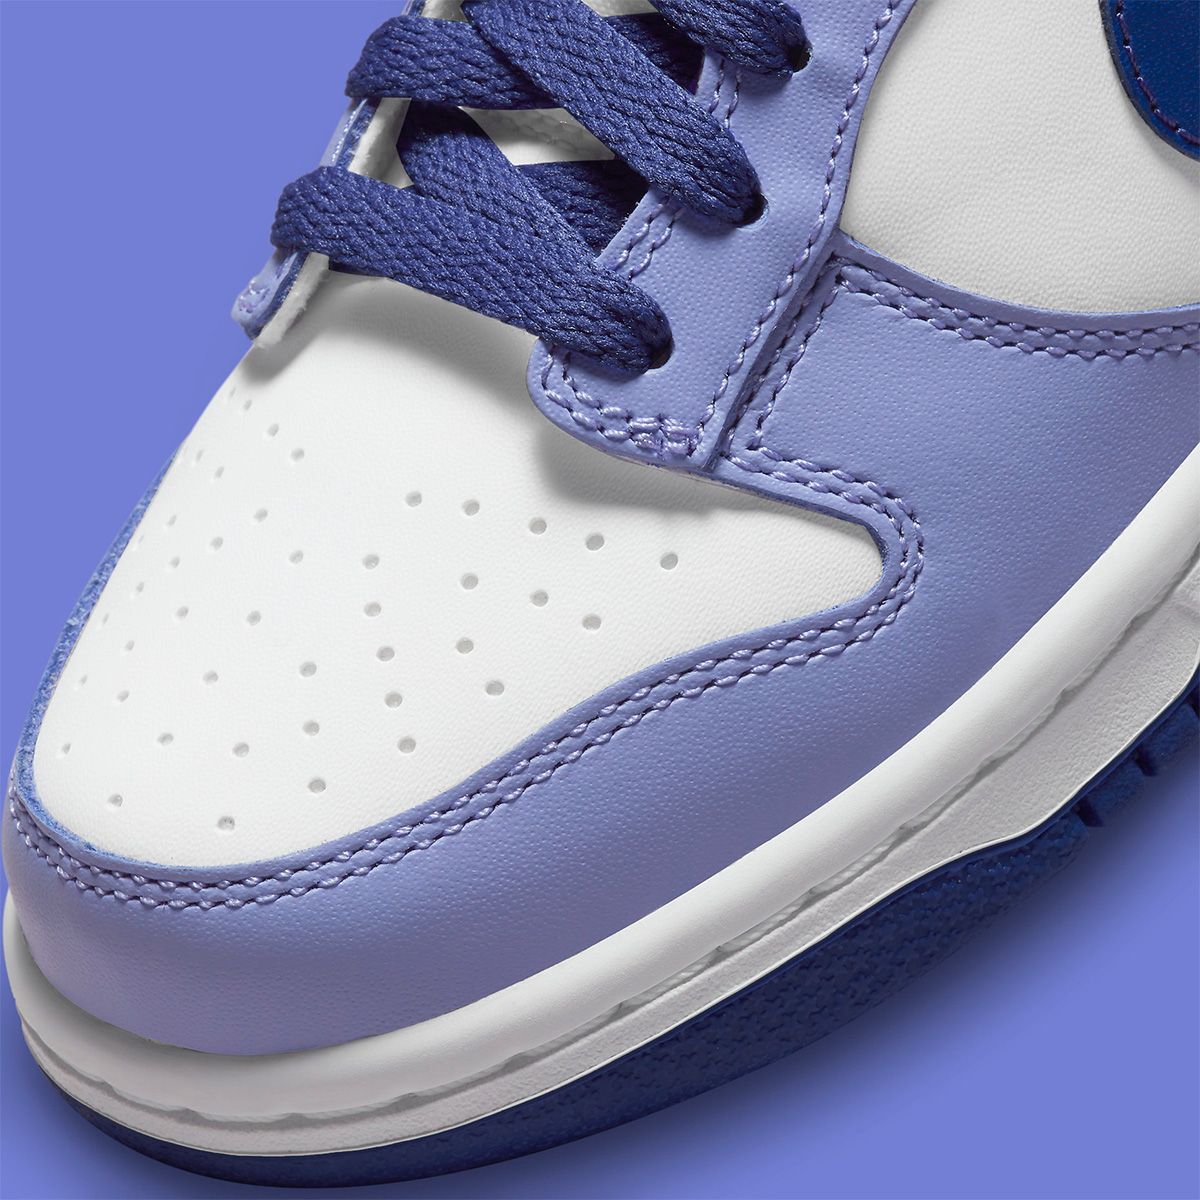 Nike Dunk Low 'Blueberry' (W) - Prosper - Prosper Store